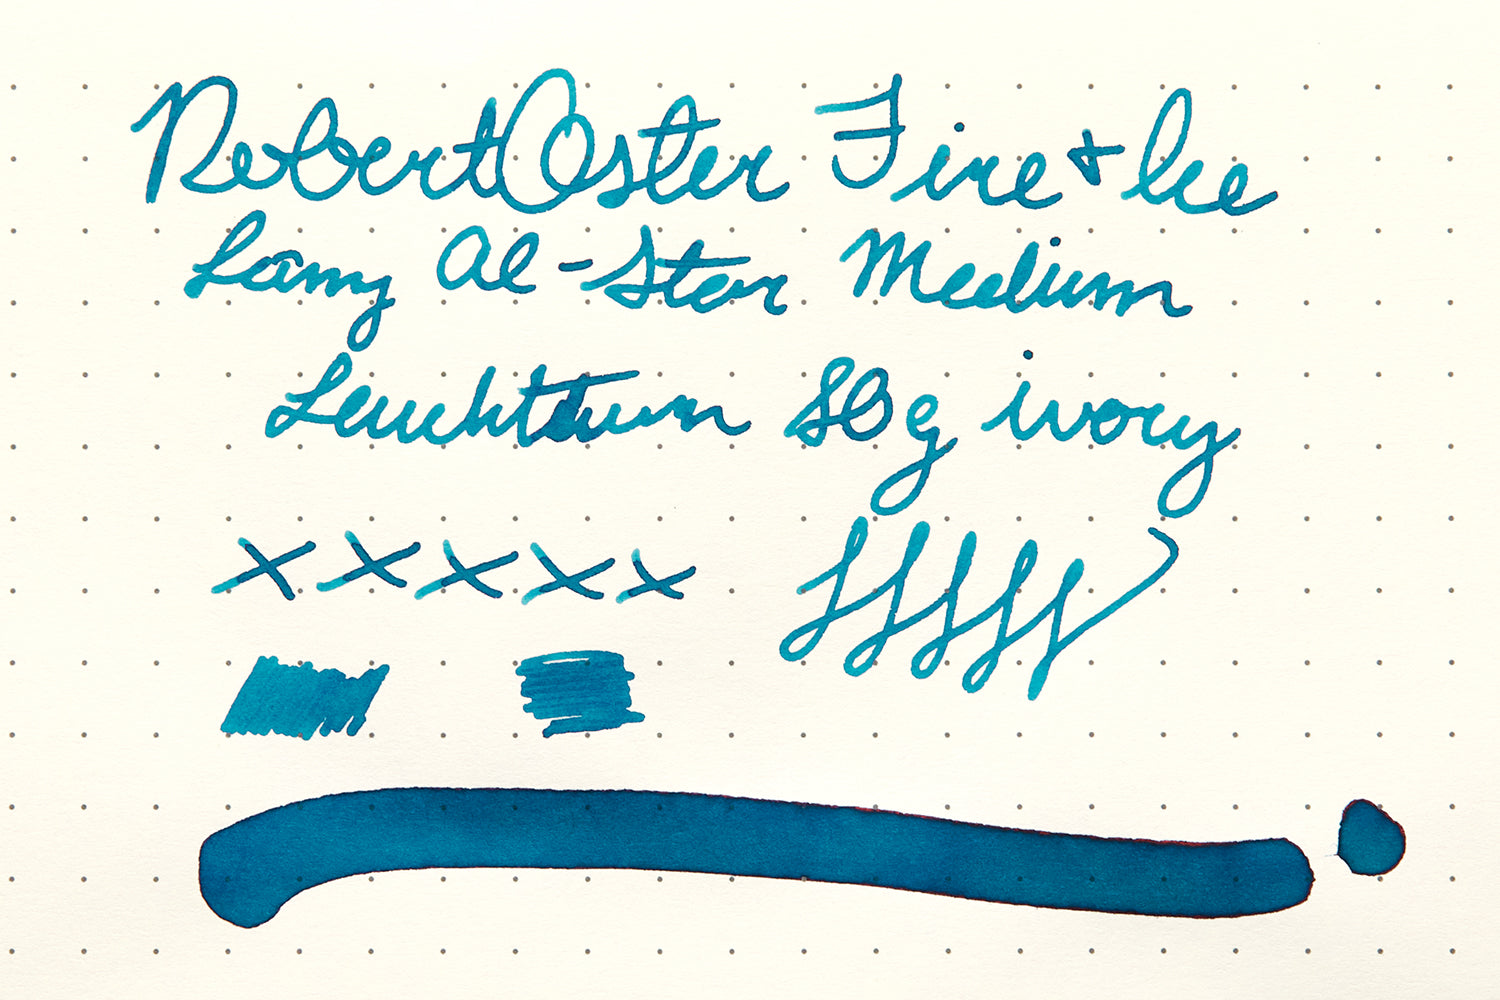 Robert Oster Fire & Ice ink review on Leuchtturm paper